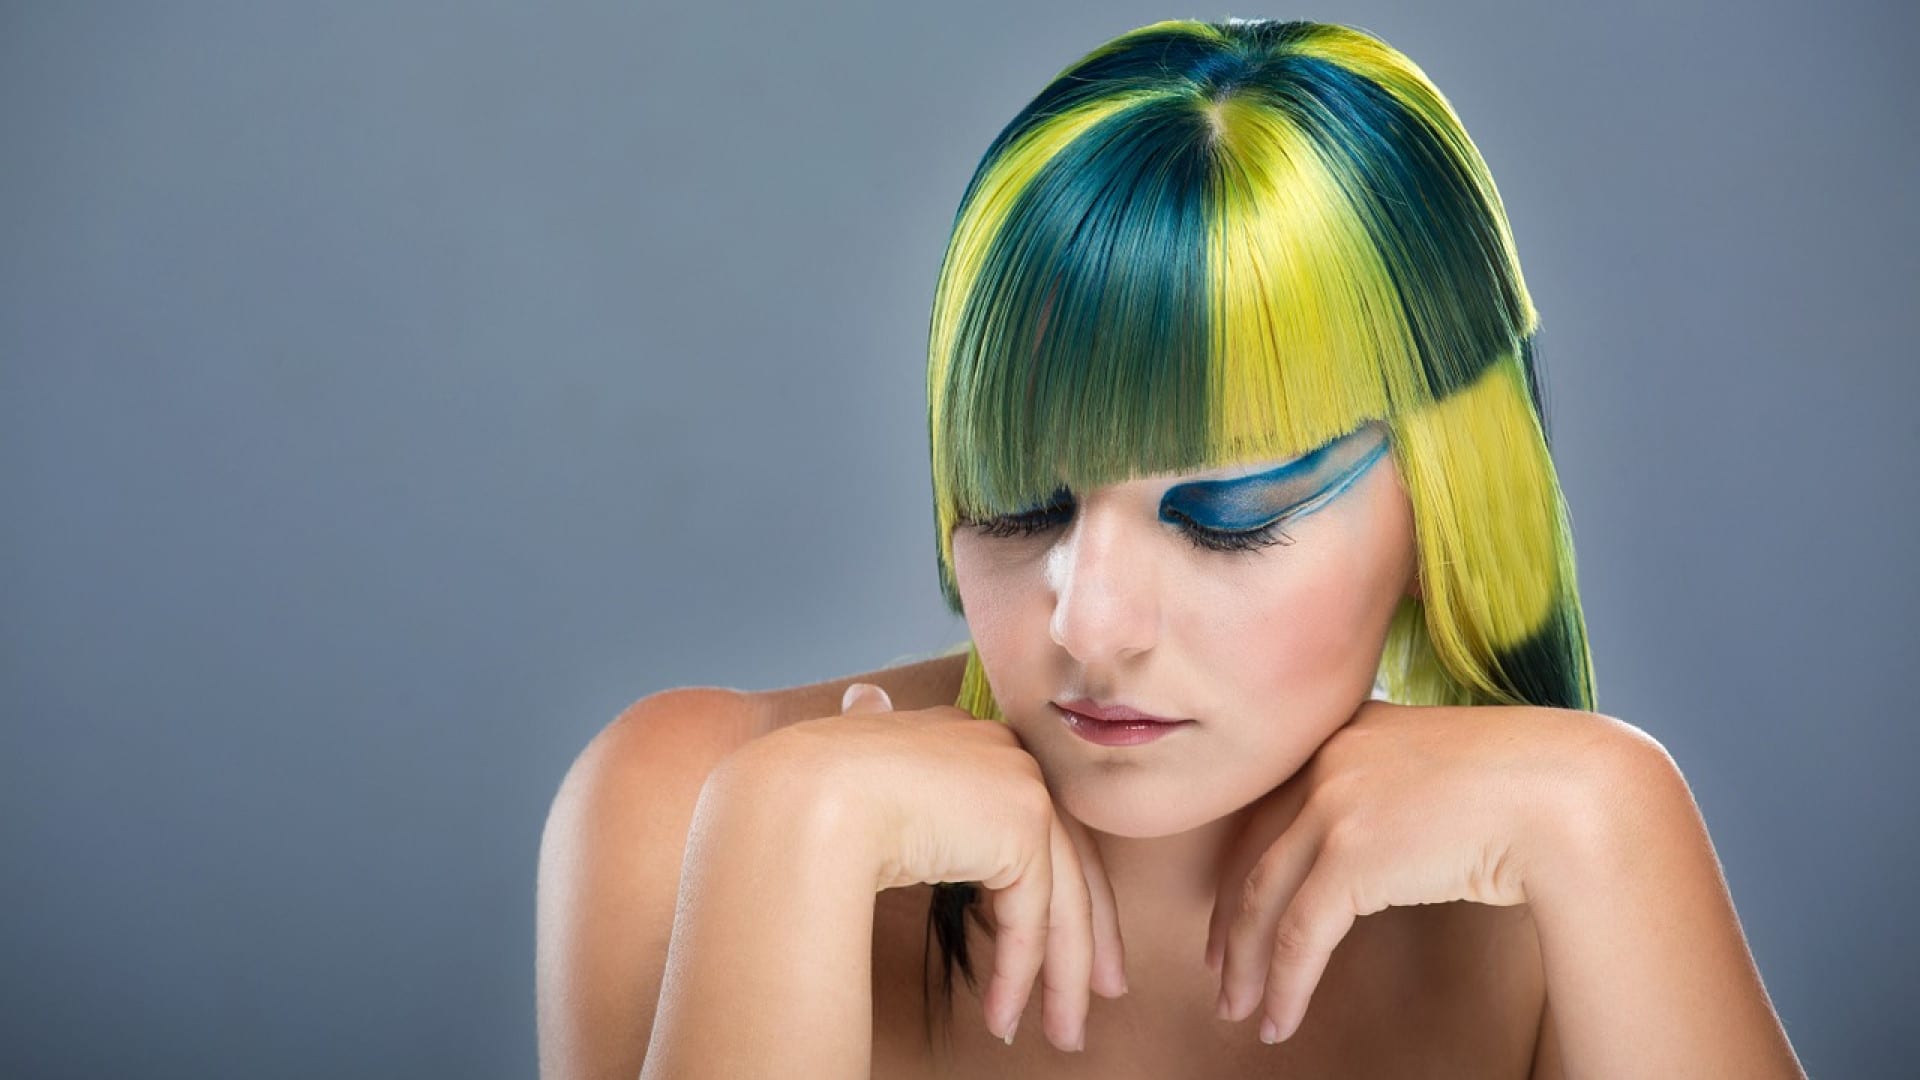 Une personne avec une coiffure colorée avec des nuances de vert et de jaune, grâce à la coloration végétale et un fard à paupières bleu vif, regarde vers le bas avec une expression contemplative.